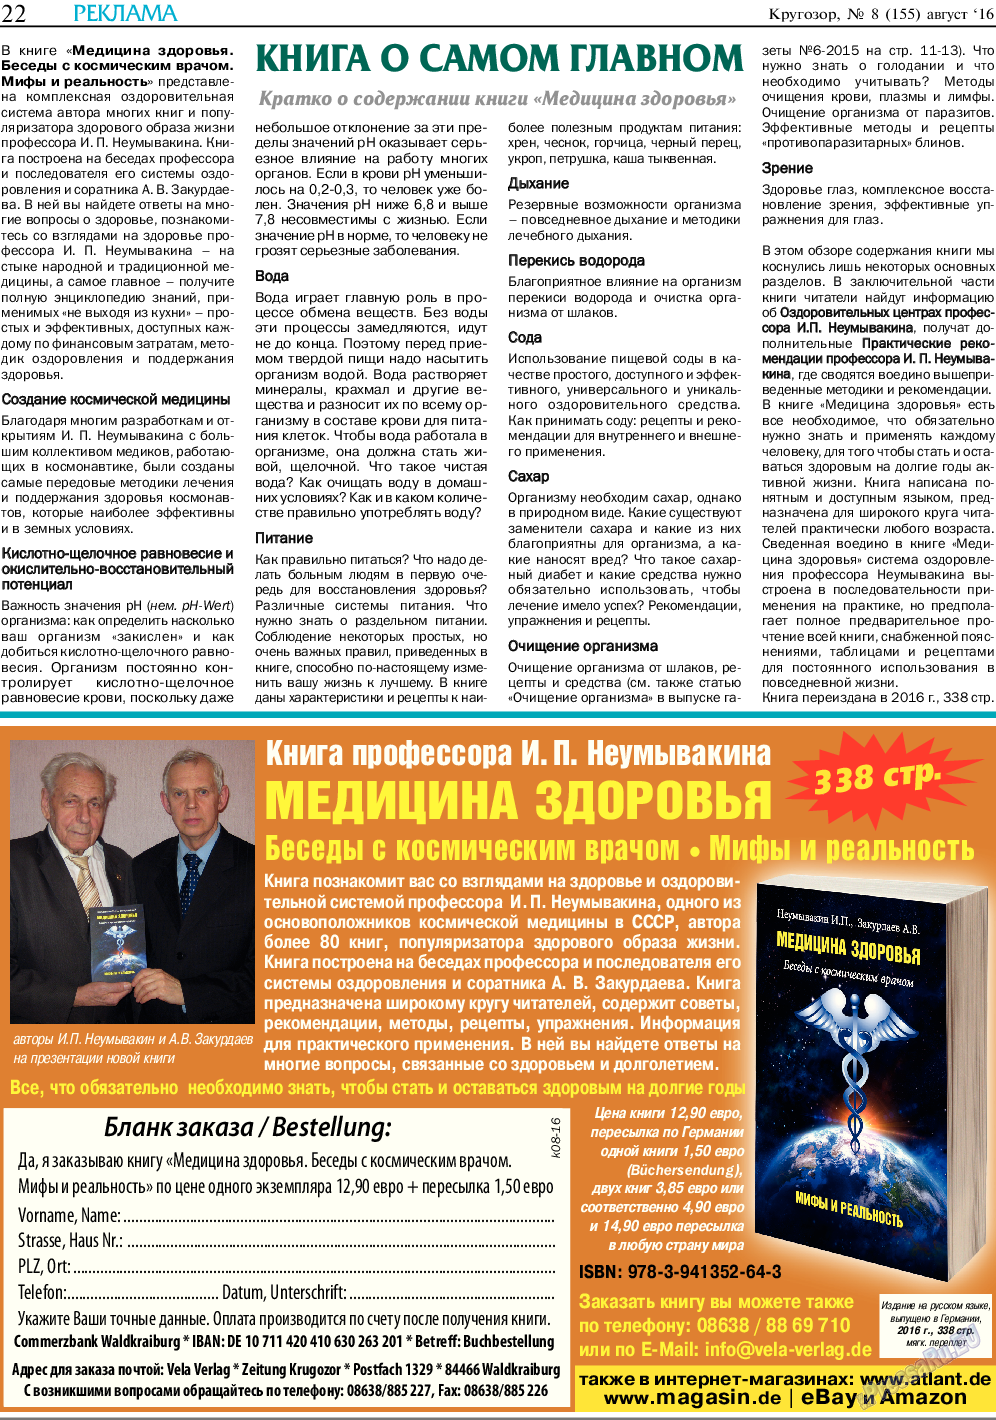 Кругозор, газета. 2016 №8 стр.22